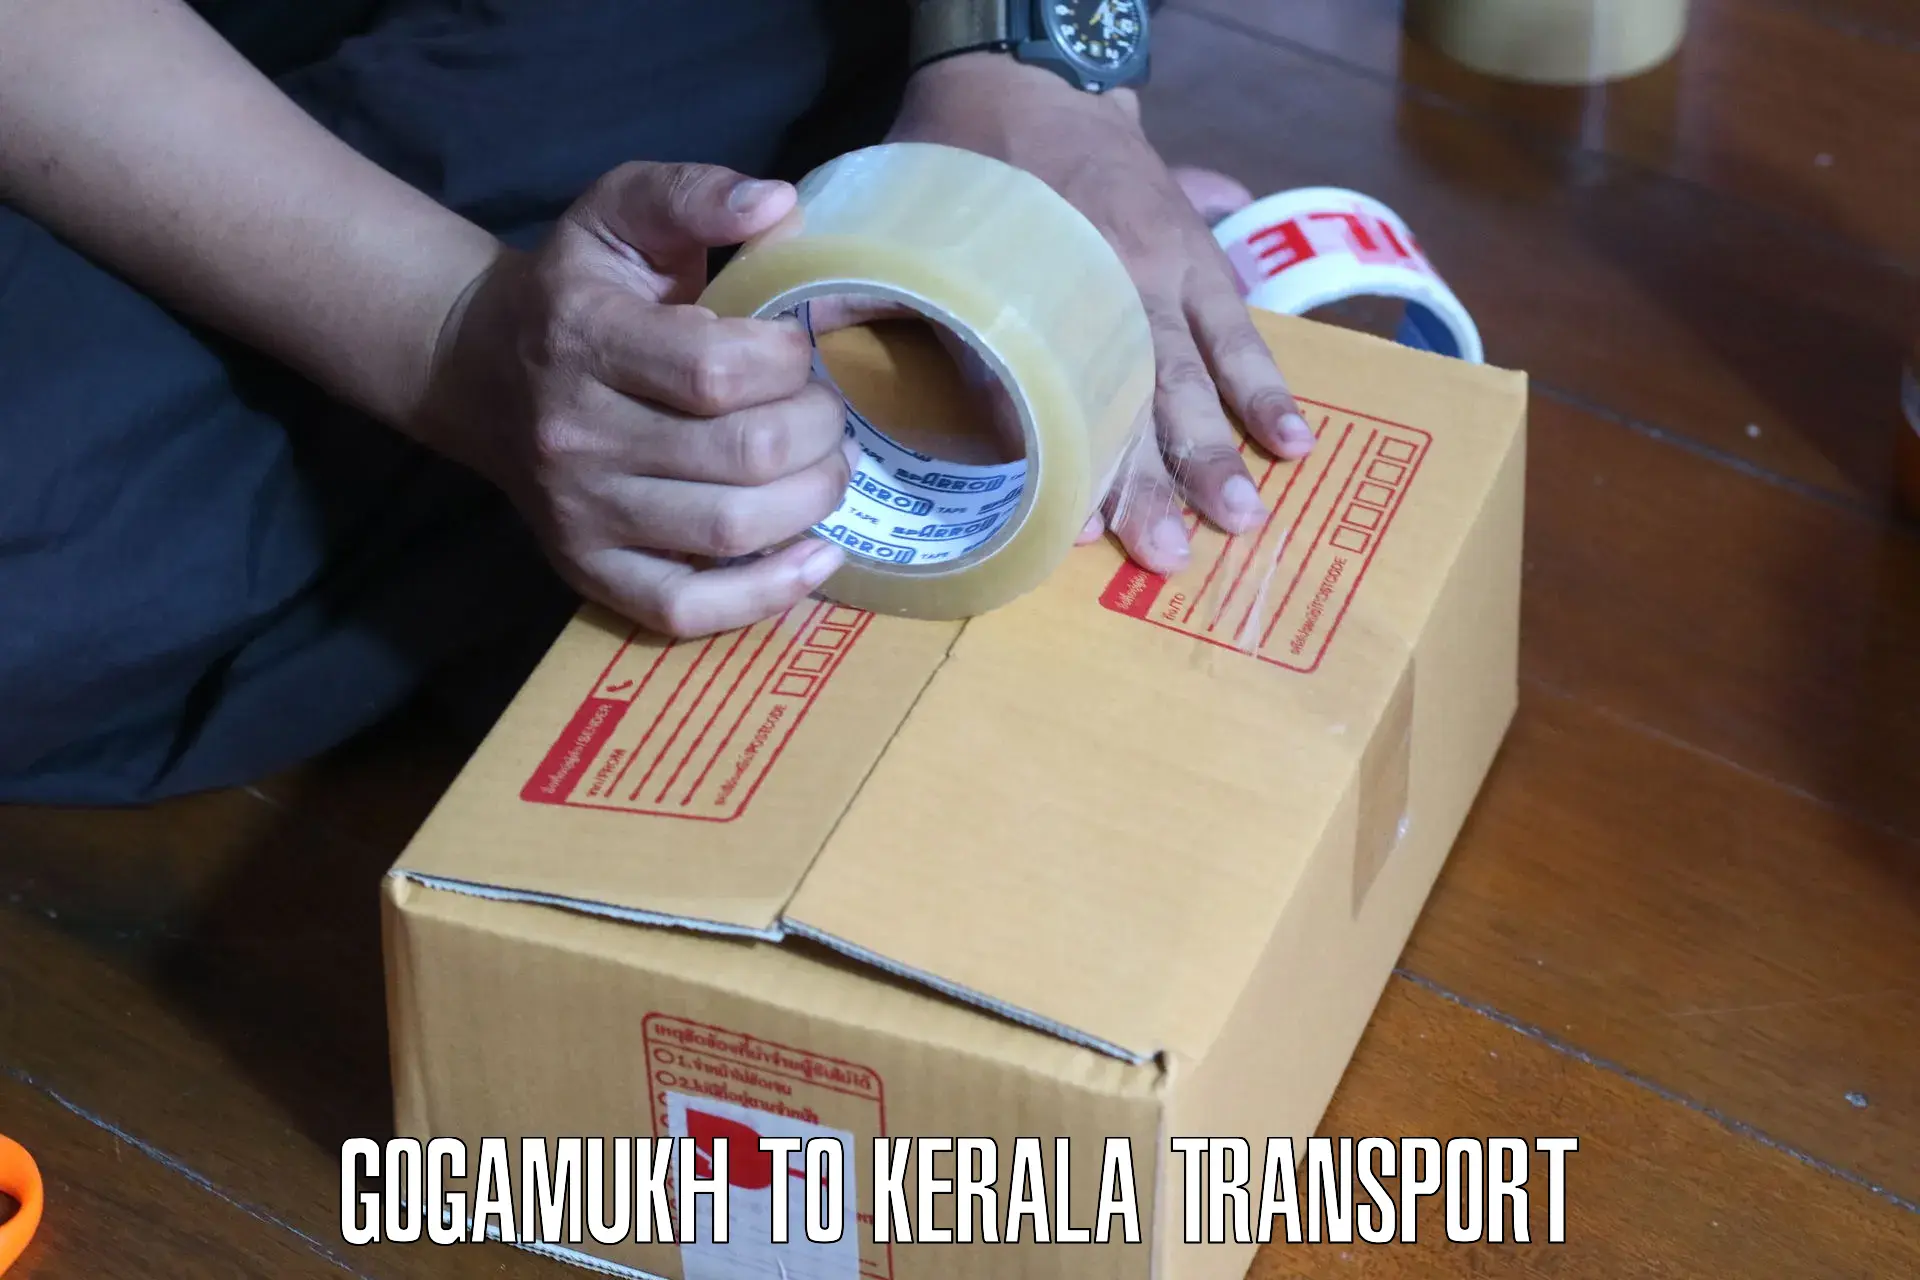 Container transport service Gogamukh to Kothamangalam